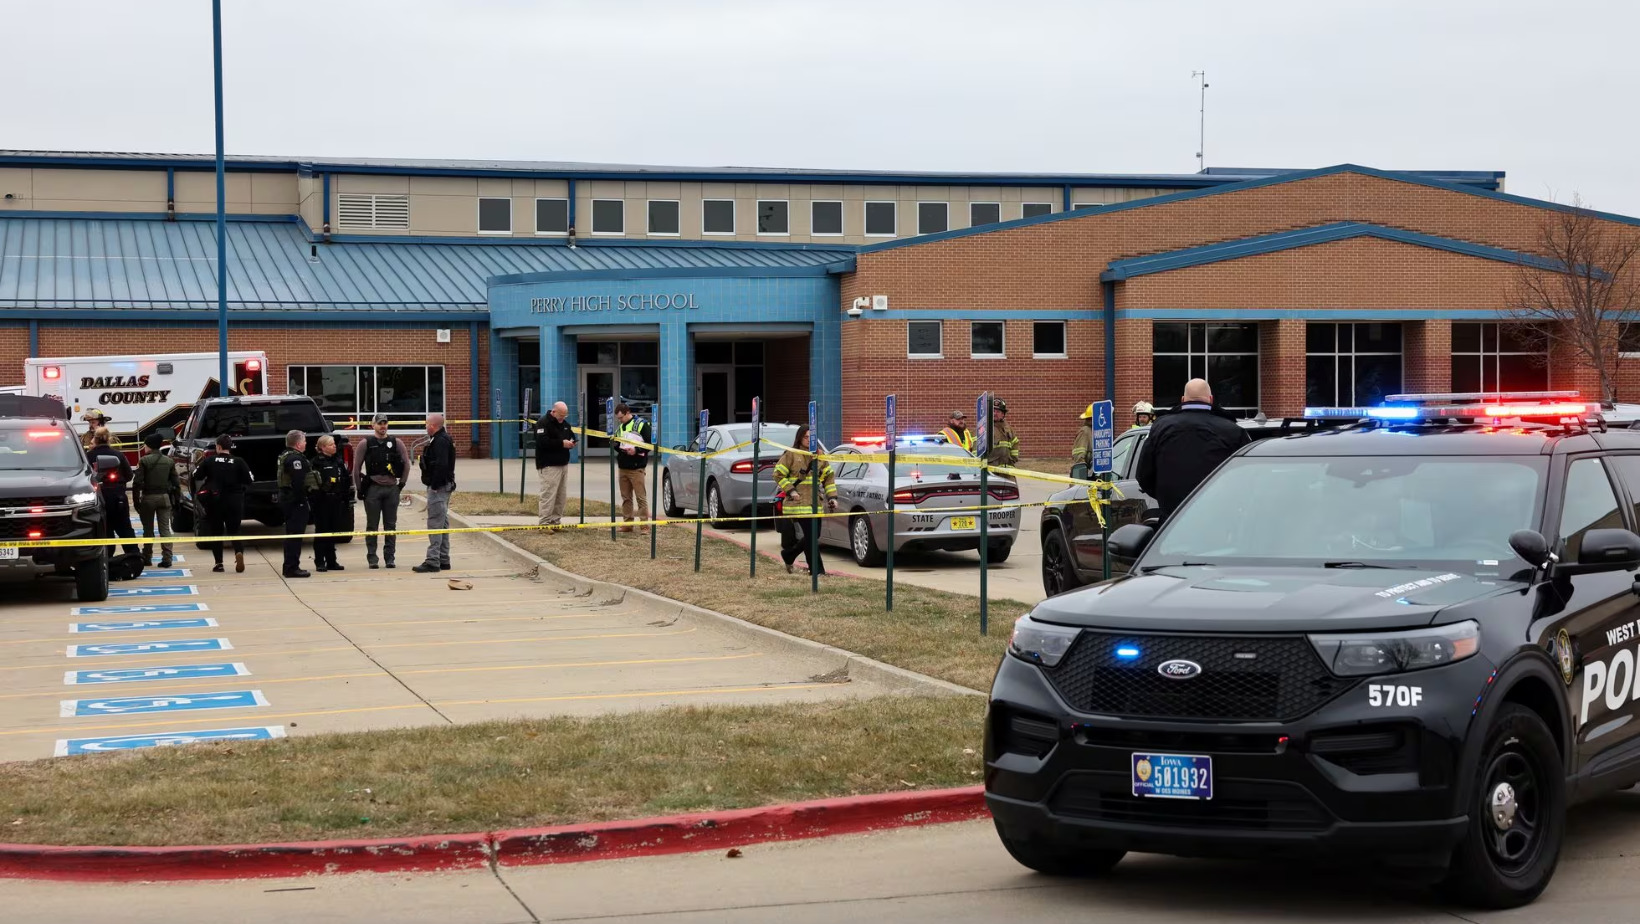 Agentes policiales en las afueras del instituto de educación secundaria en la localidad de Perry, en Iowa, EE. UU. FOTO: Fuente externa